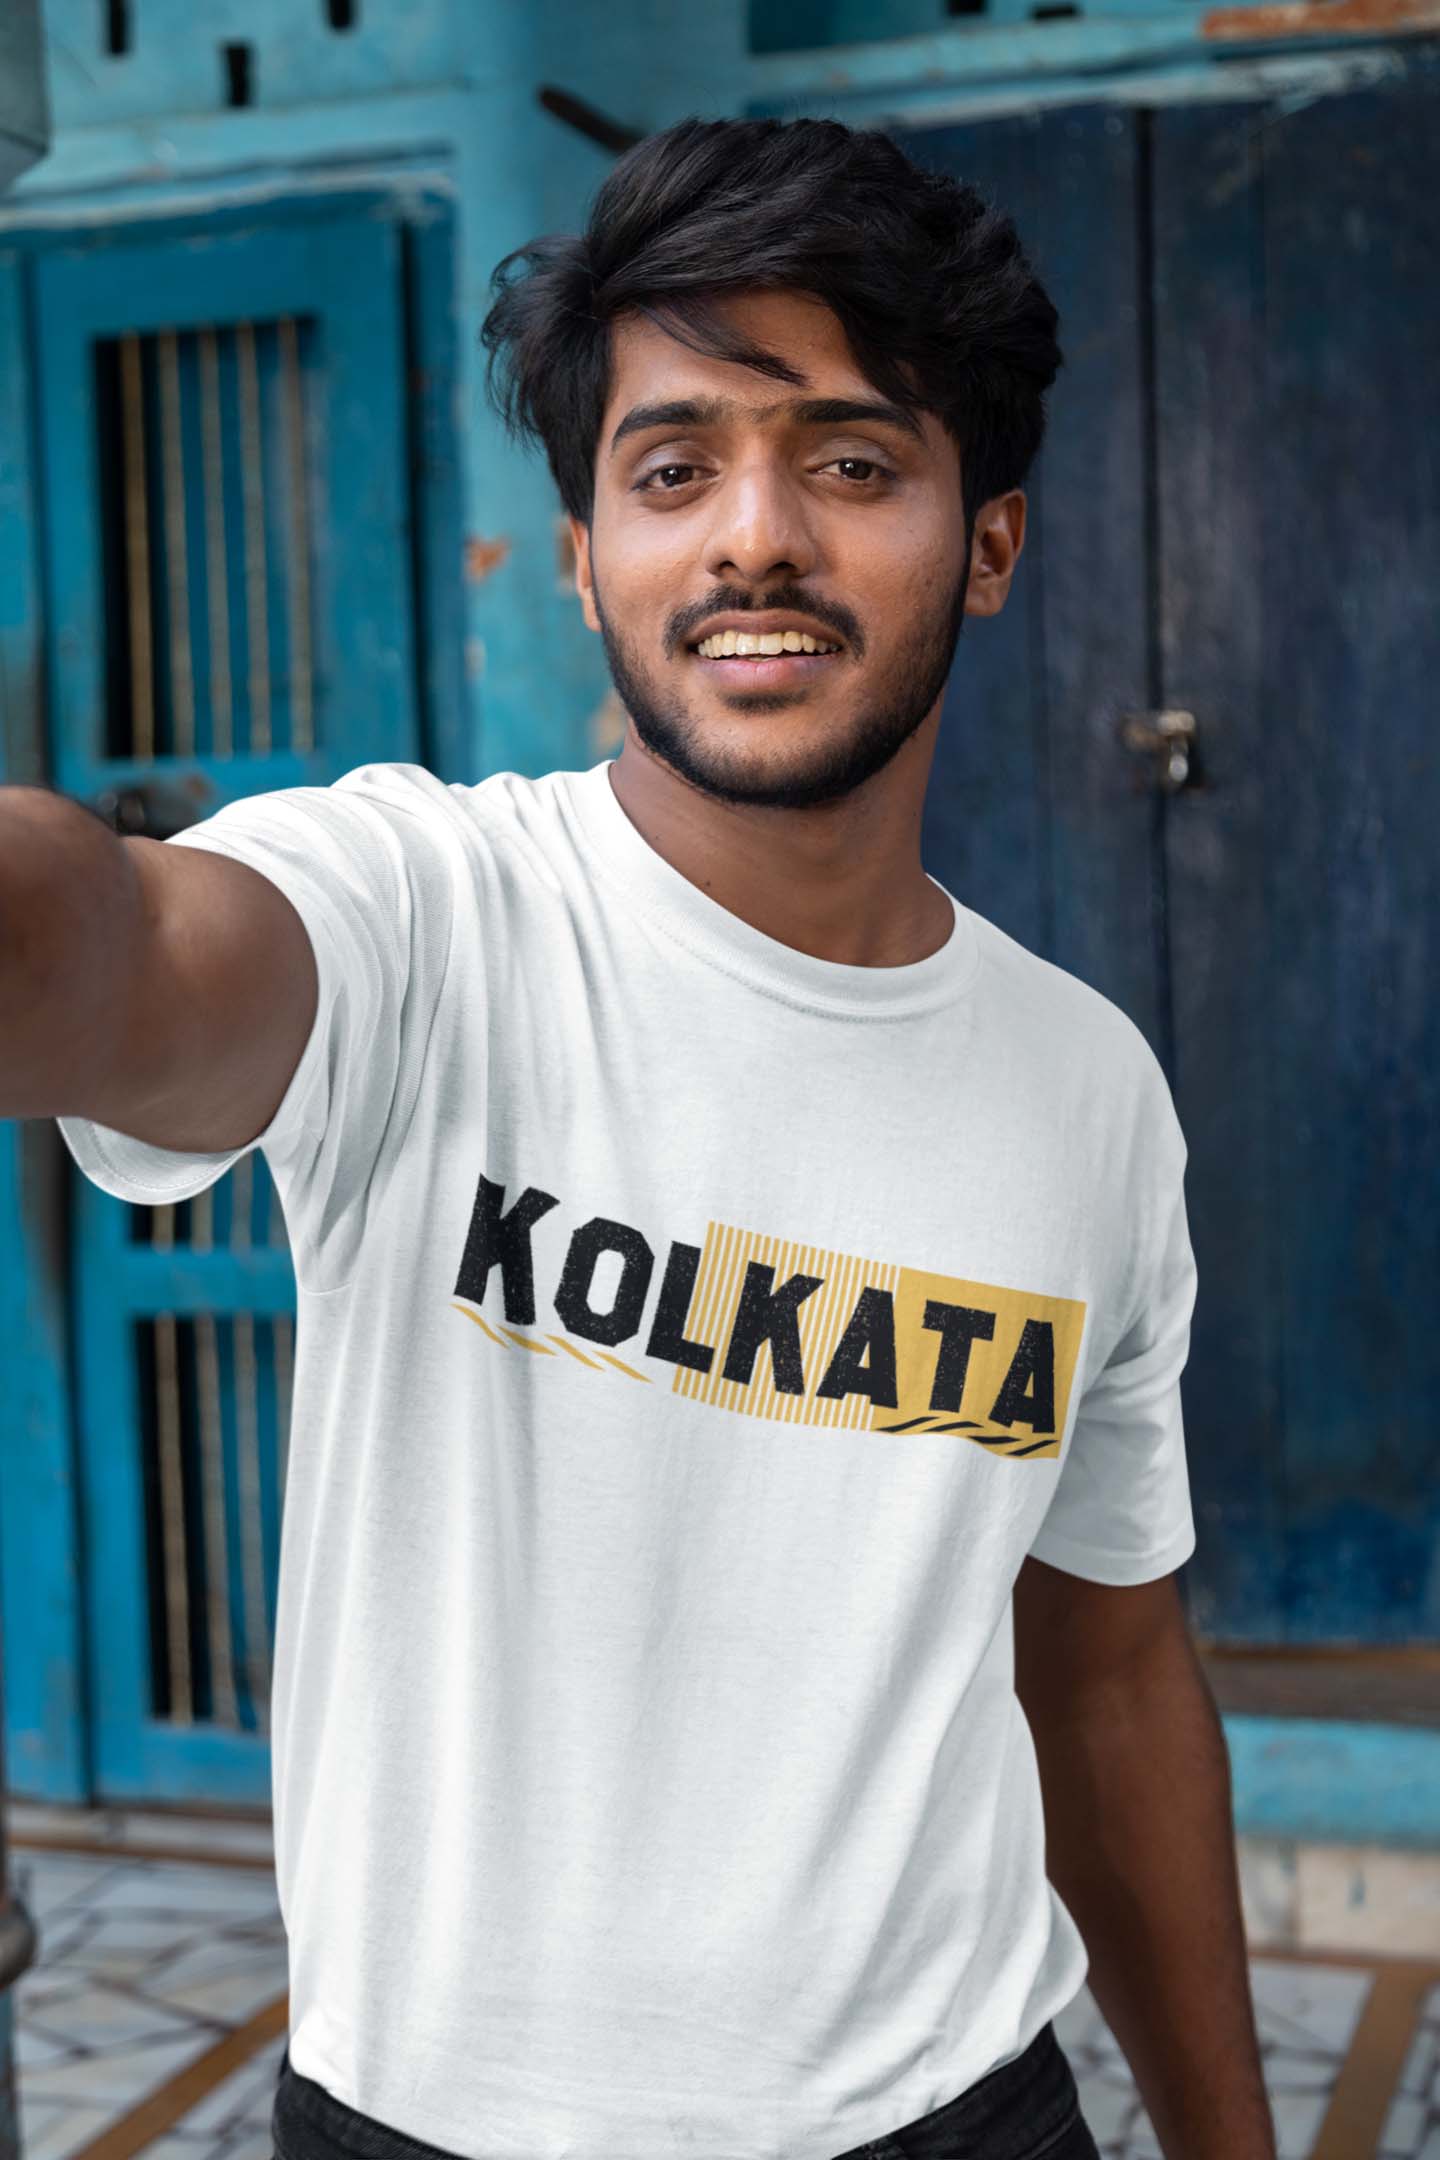 Kolkata Round Neck T shirt